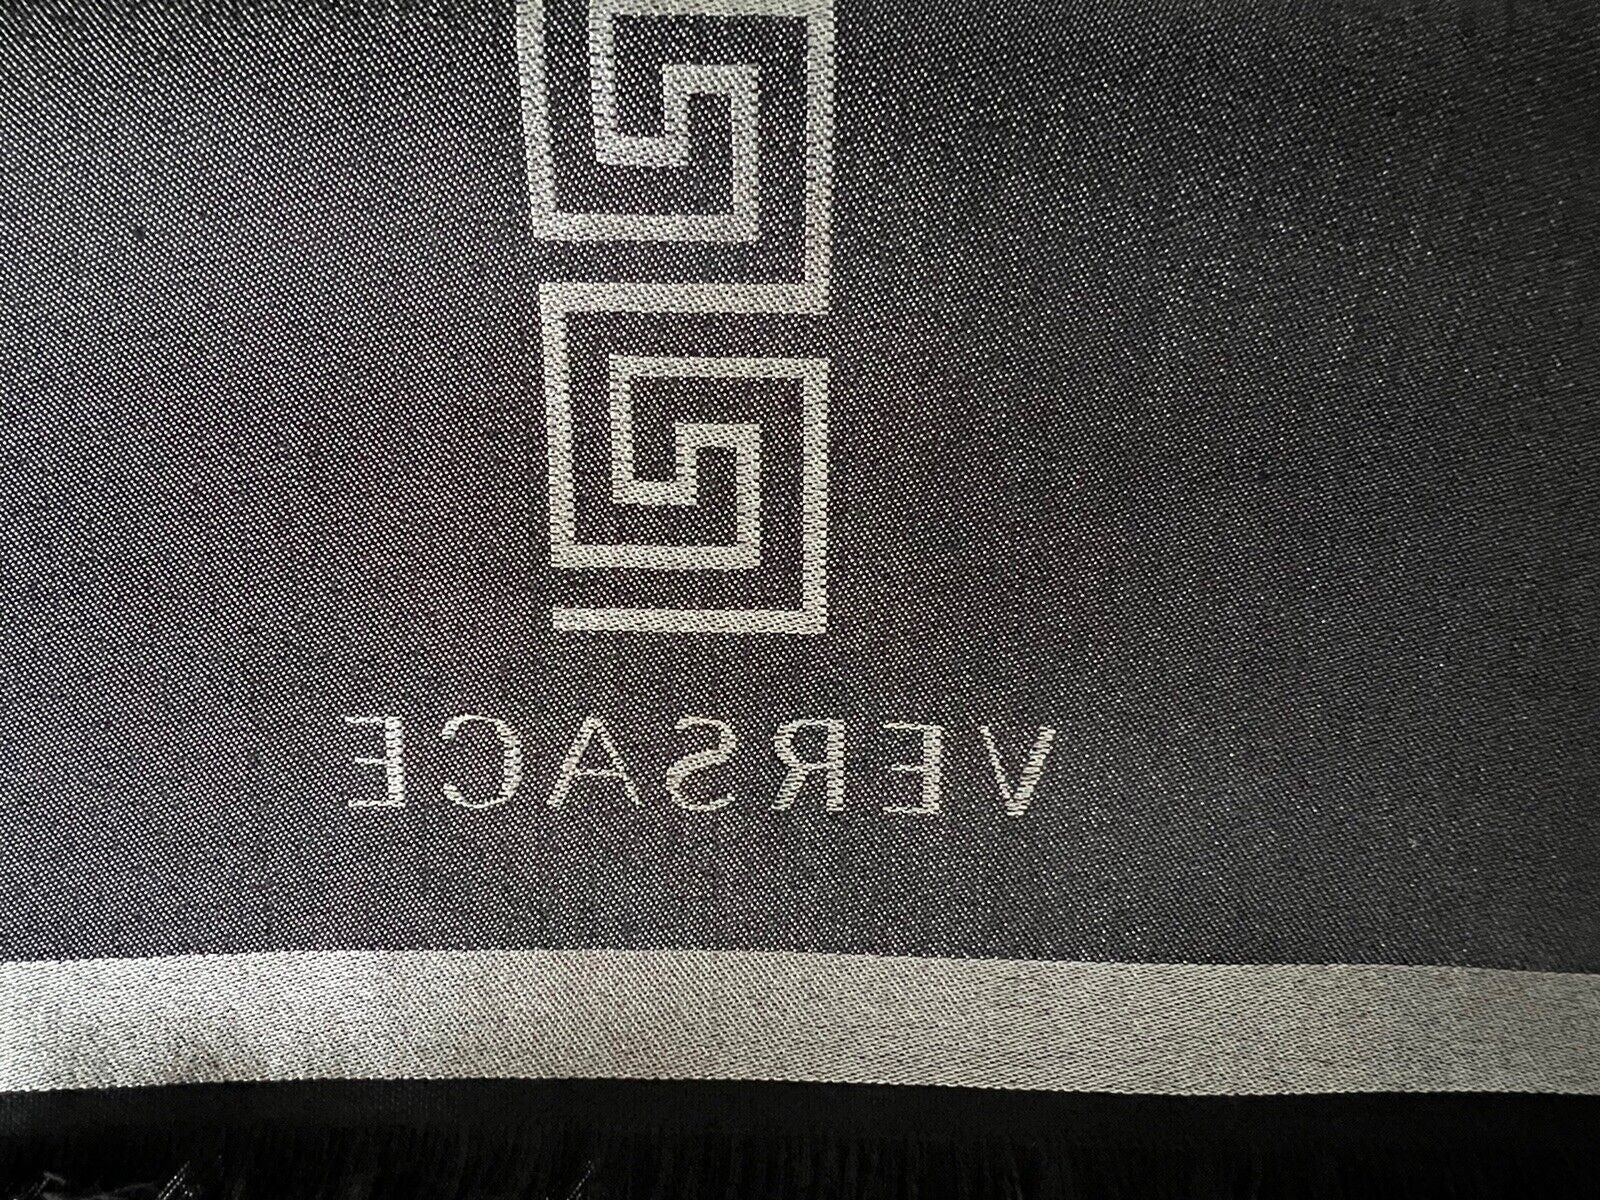 NWT $400 Шарф Versace Medusa/Greek Key Logo из шерсти и шелка, черный/серый, 14,5 Ш x 70 л 